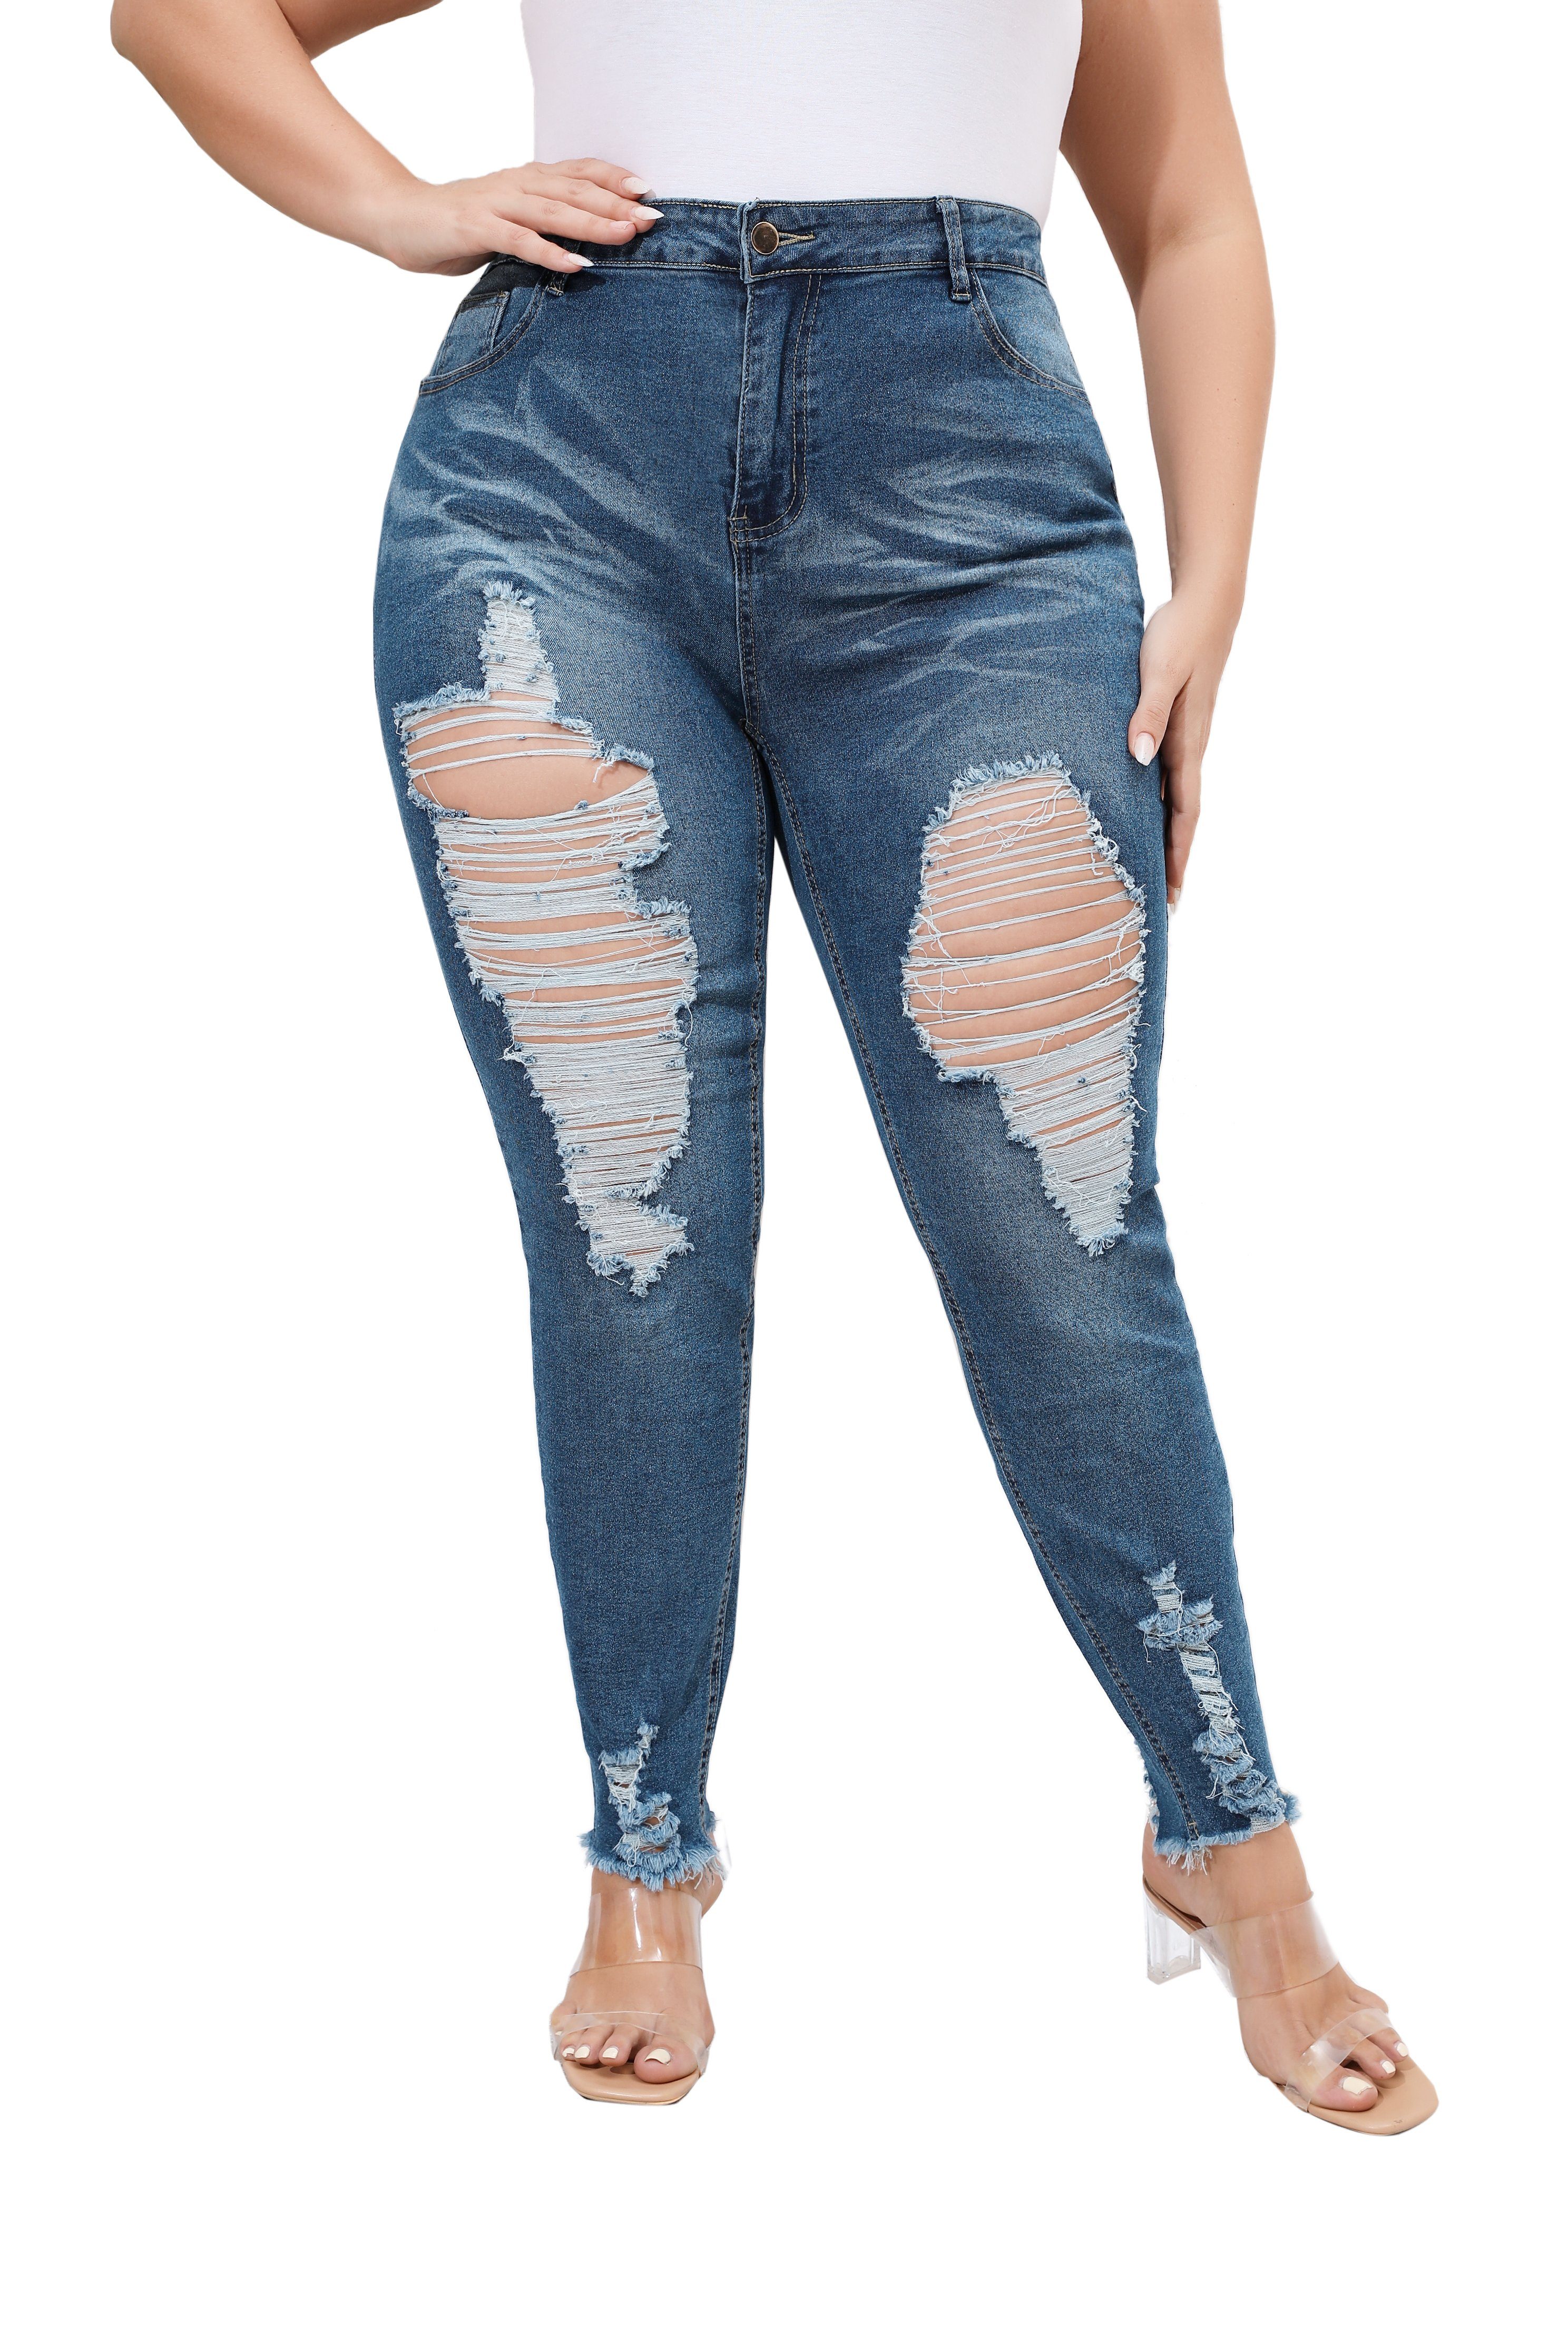 PYL Stretch-Jeans »Damen Große Größe Destroyed jeans Navy Blau Mit High  Waist« 46-56Größe